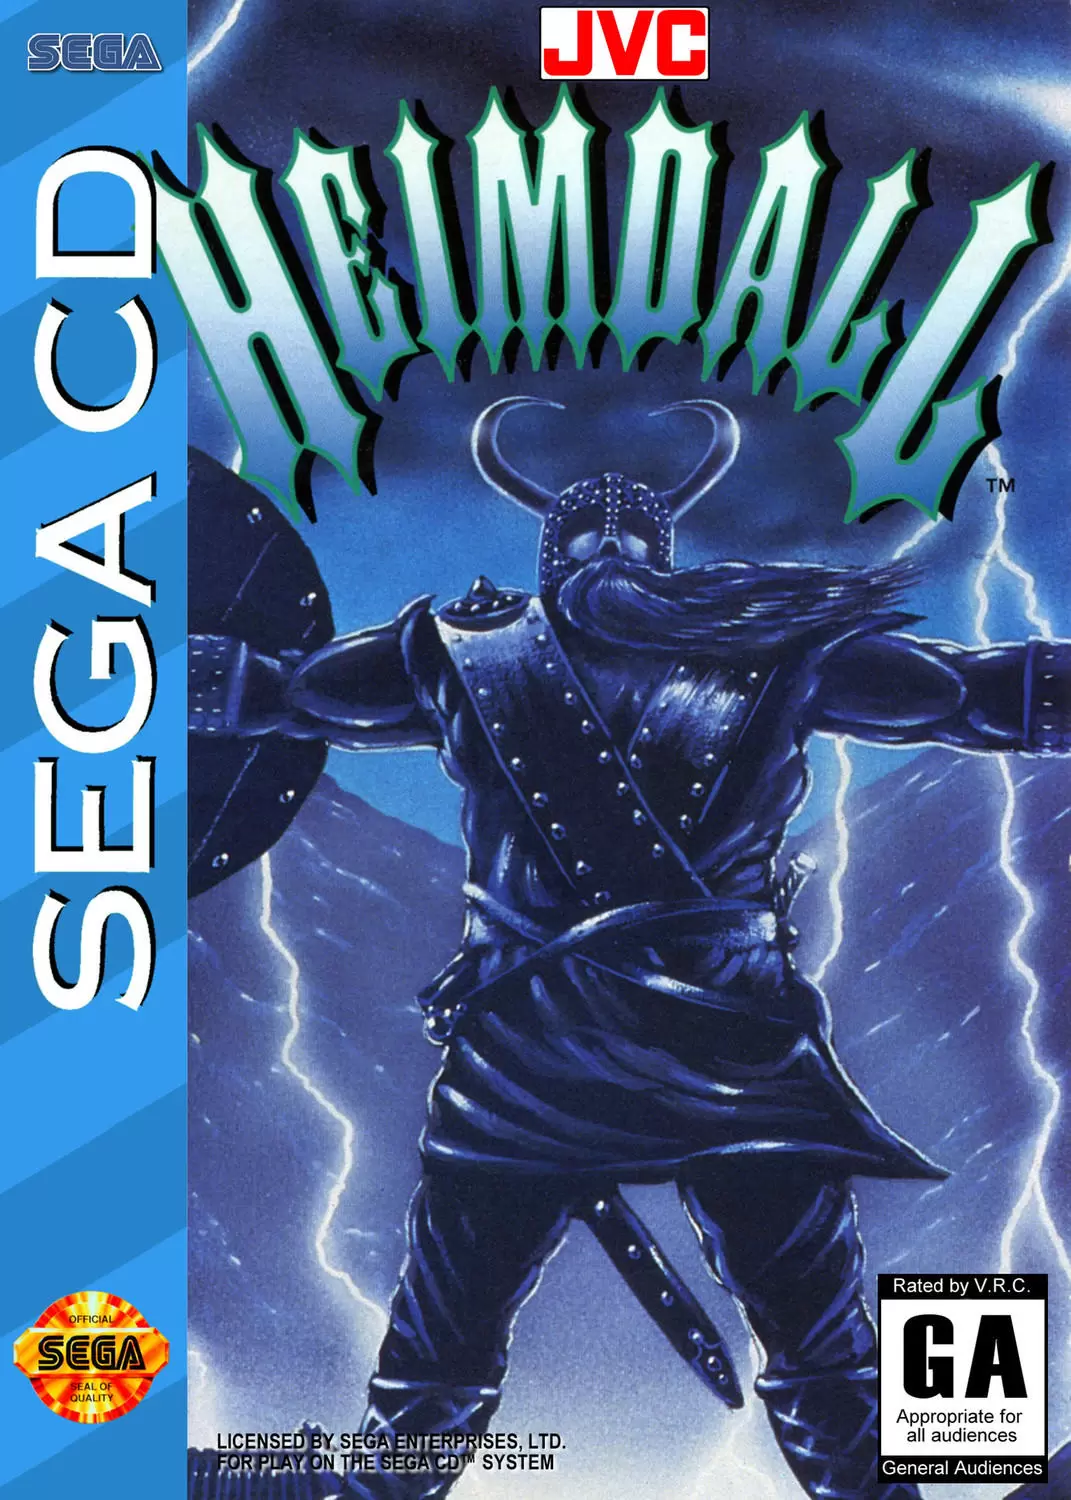 Jeux SEGA Mega CD - Heimdall